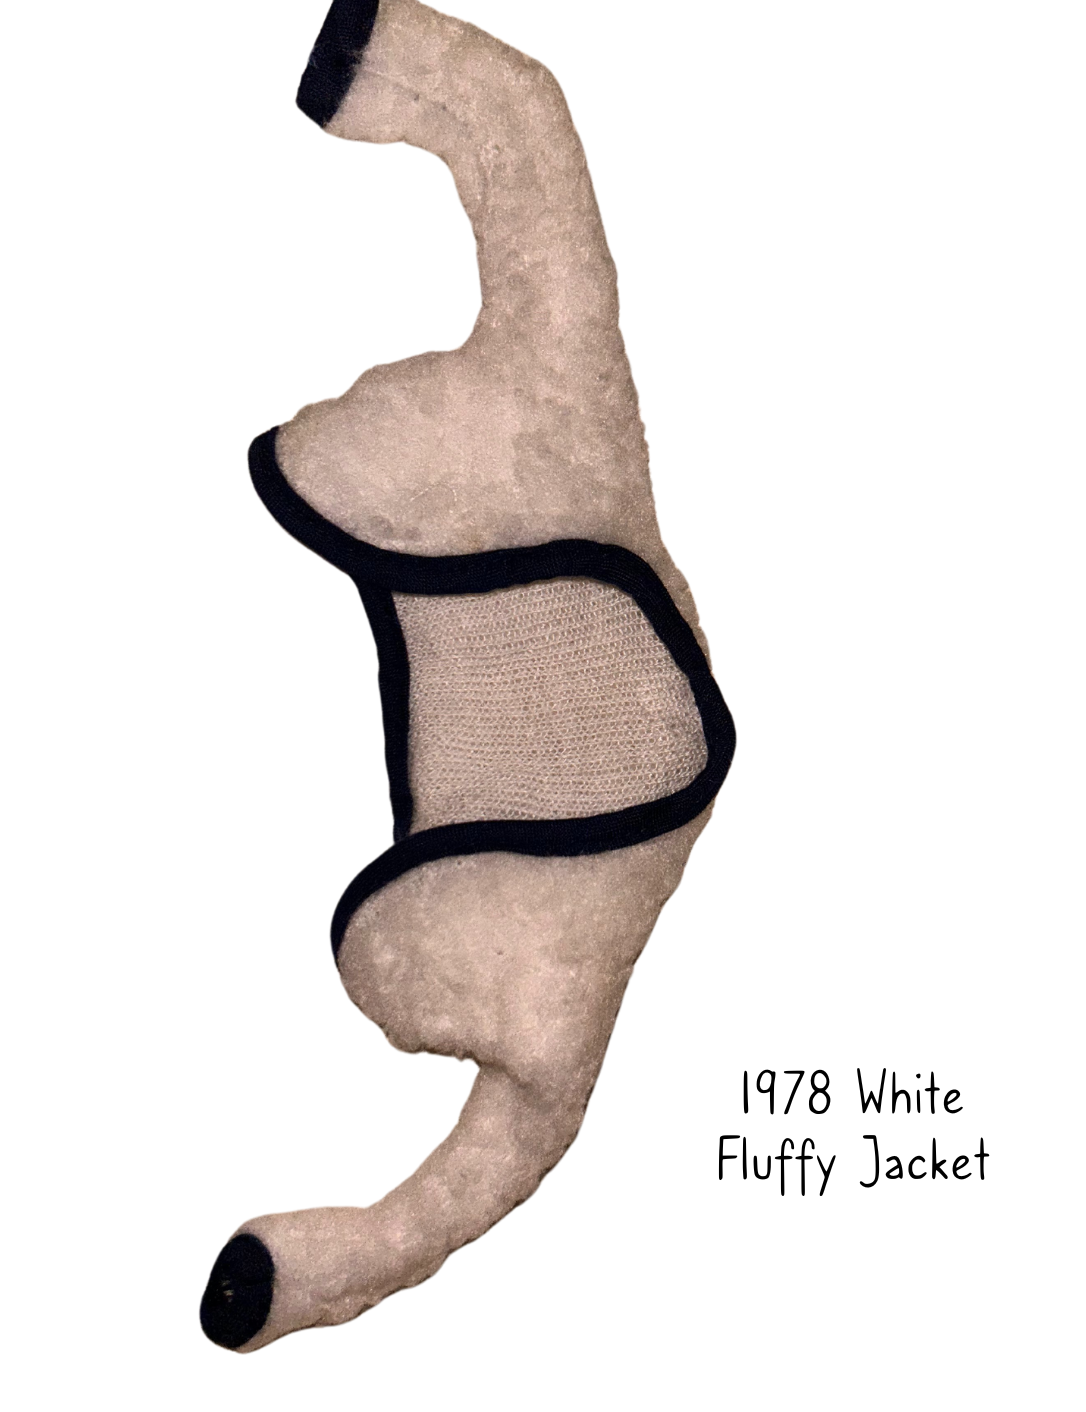 Pedigree Sindy 1978 Mix n Match White Fluffy Jacket